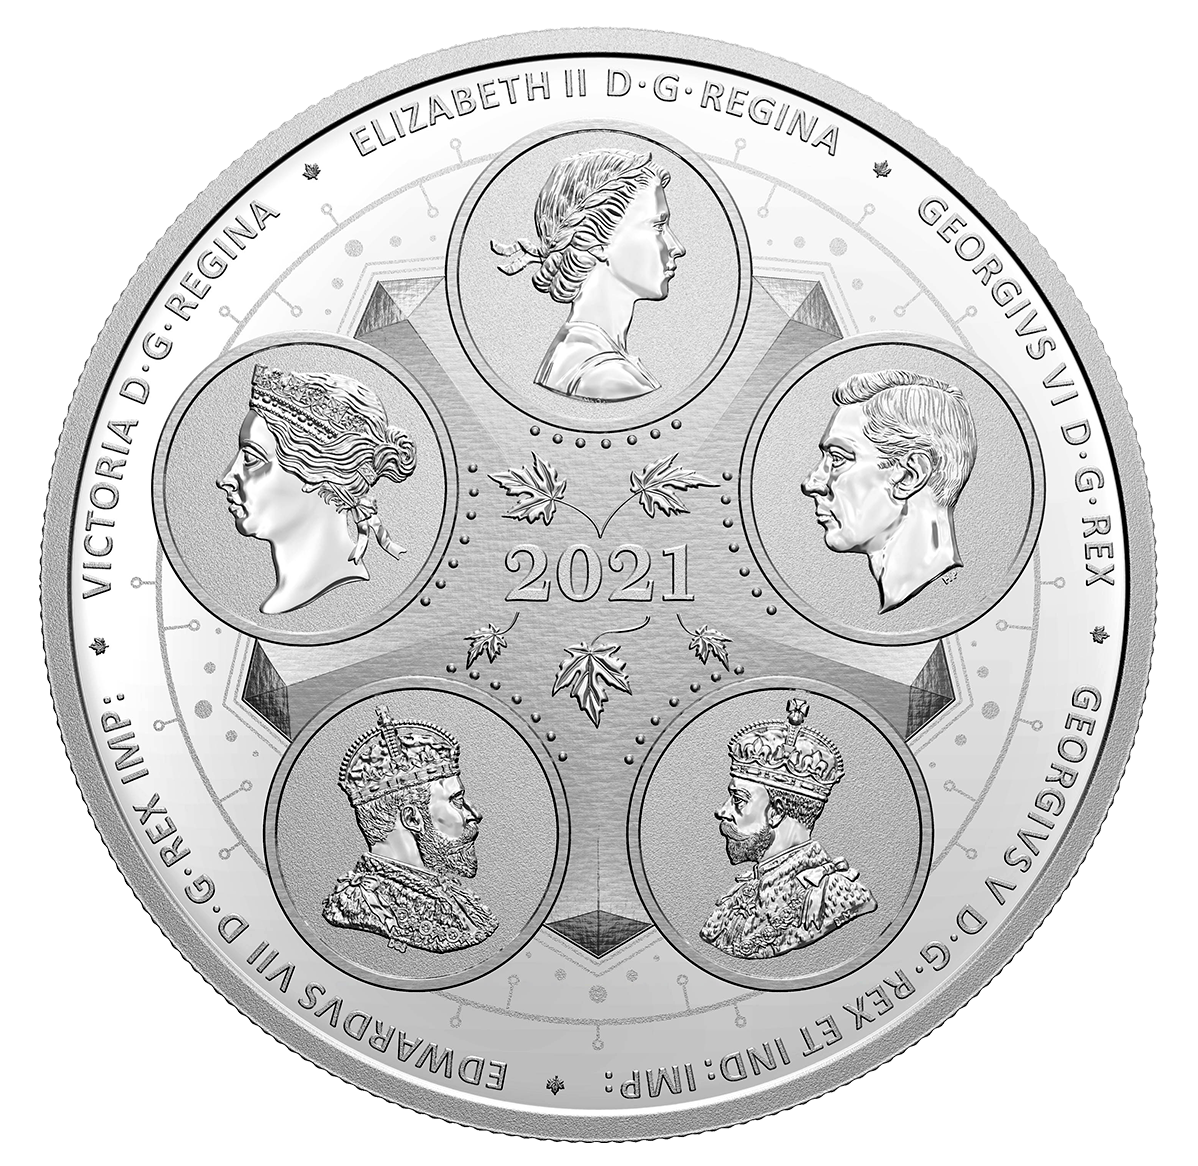 Five effigies on one coin